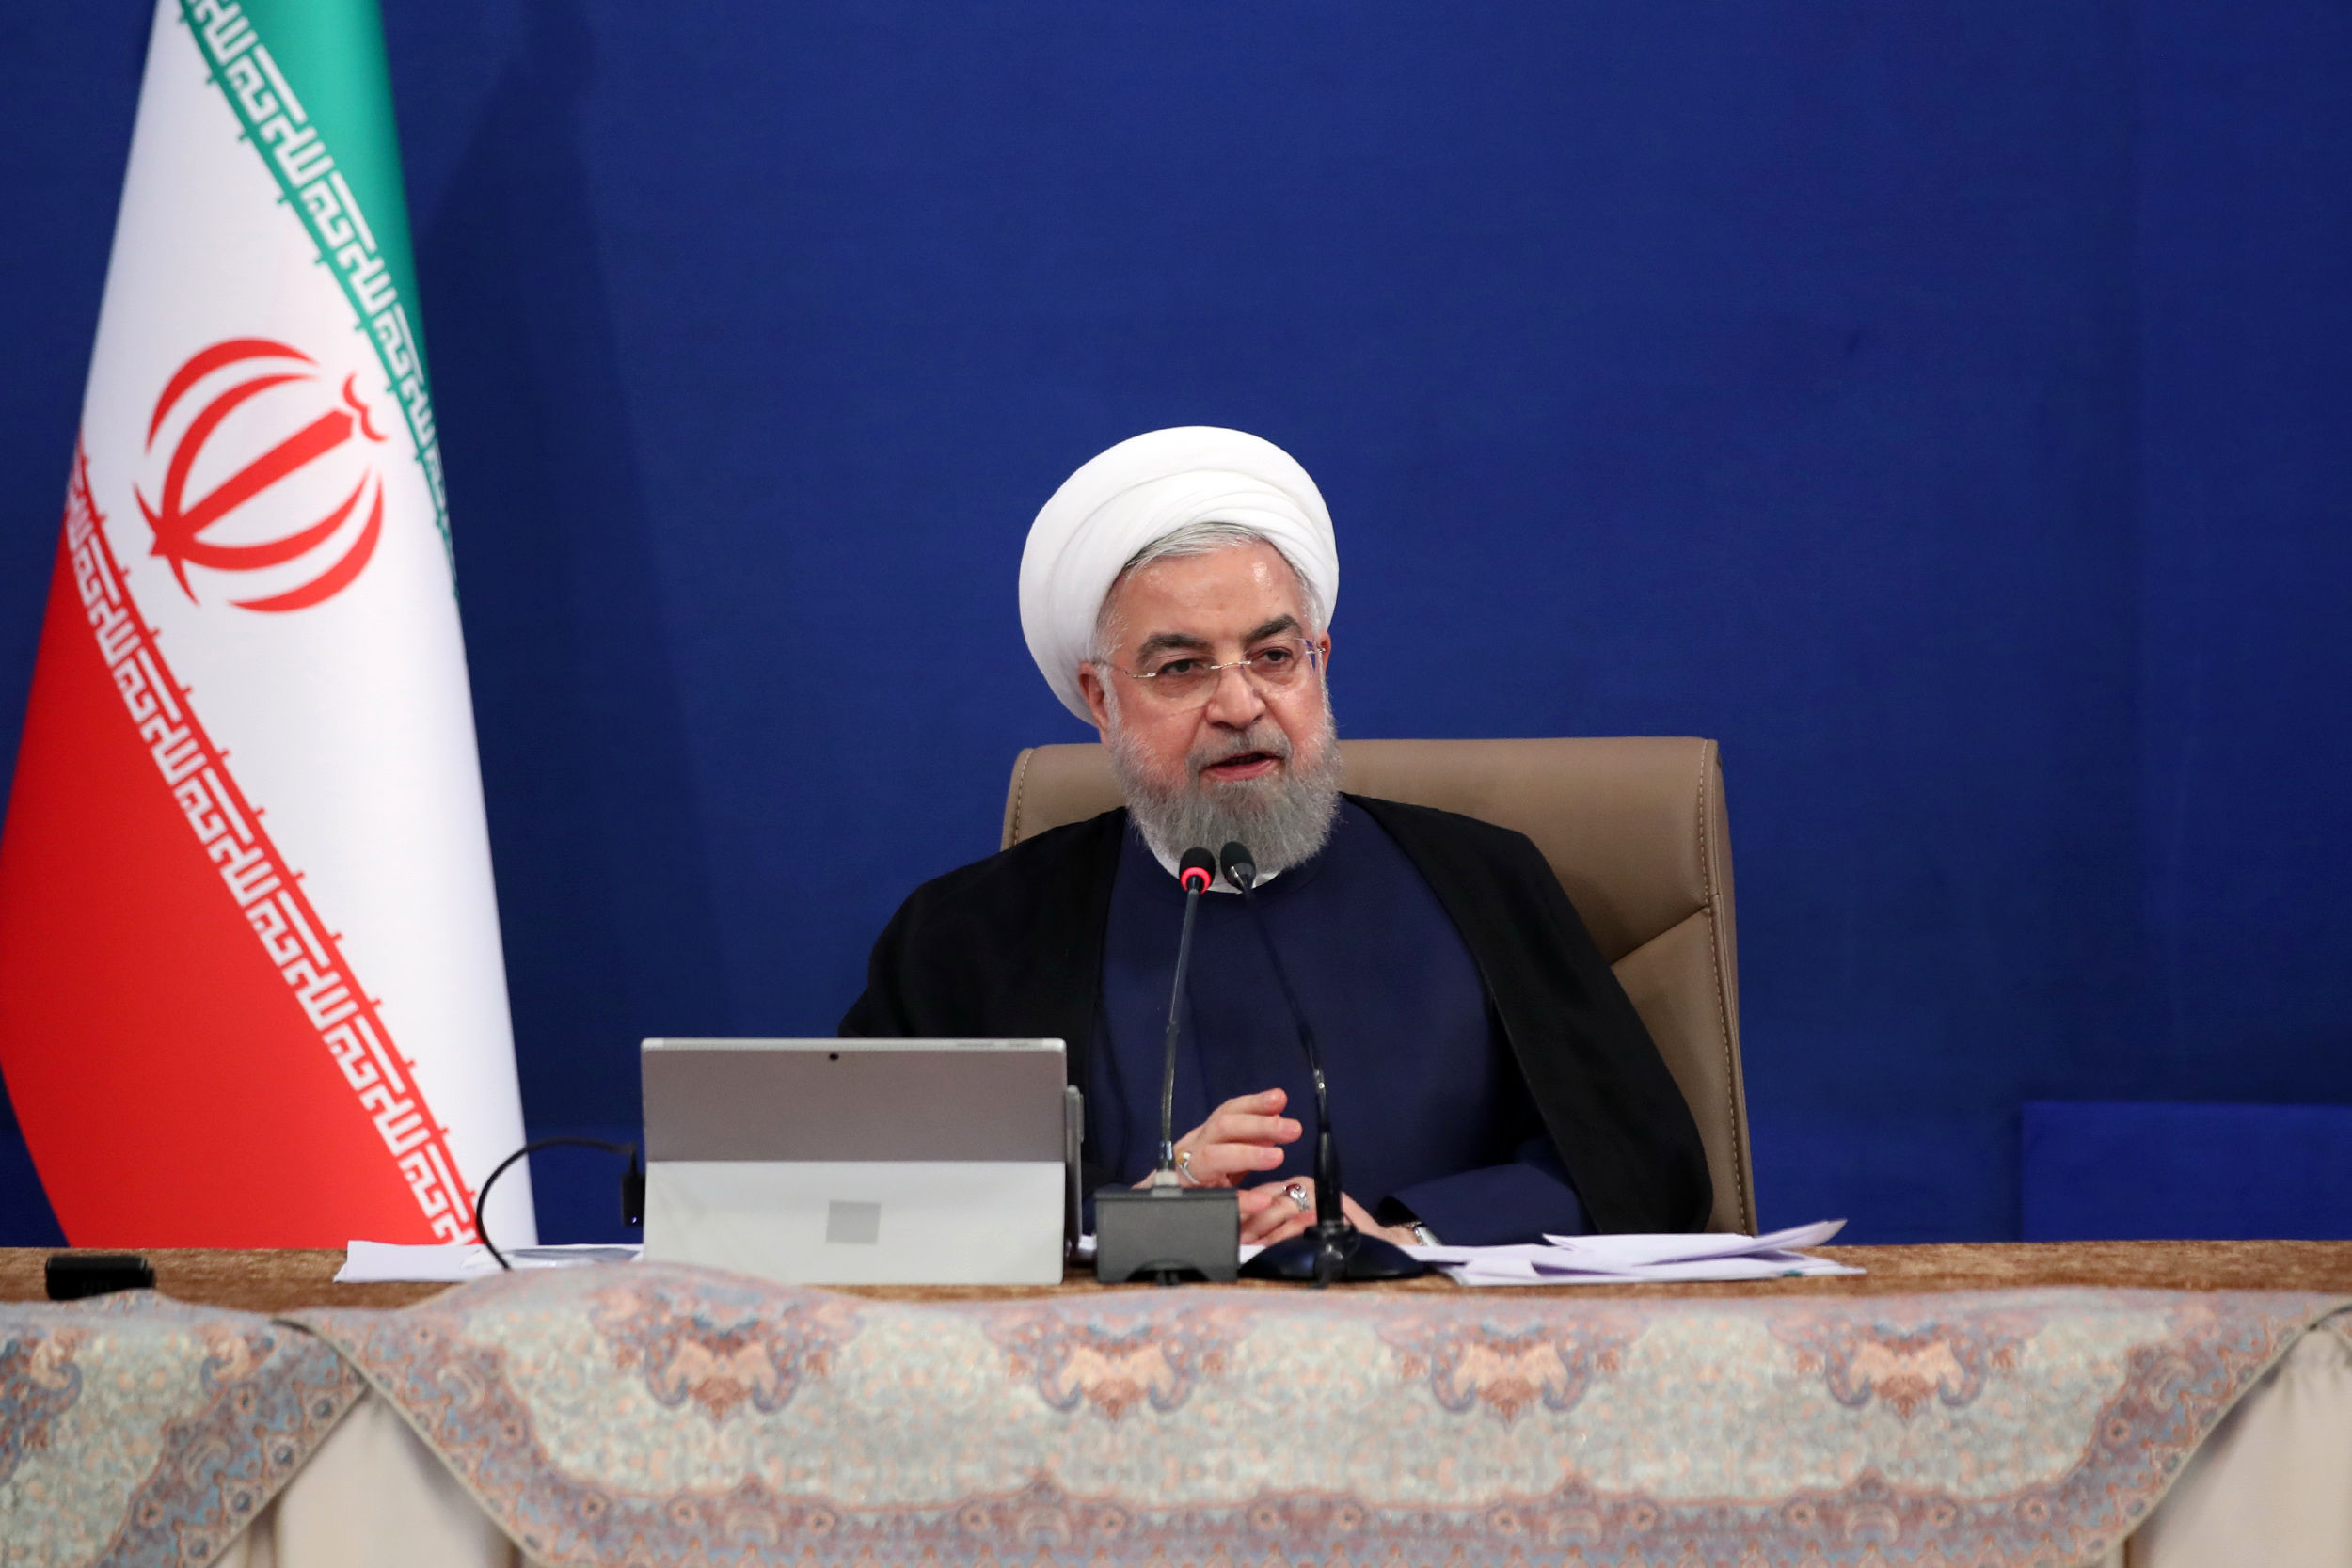 روحانی: اگر کشوری زودتر به واکسن کرونا دست یافت برای خرید آن اقدام می کنیم+ فیلم 